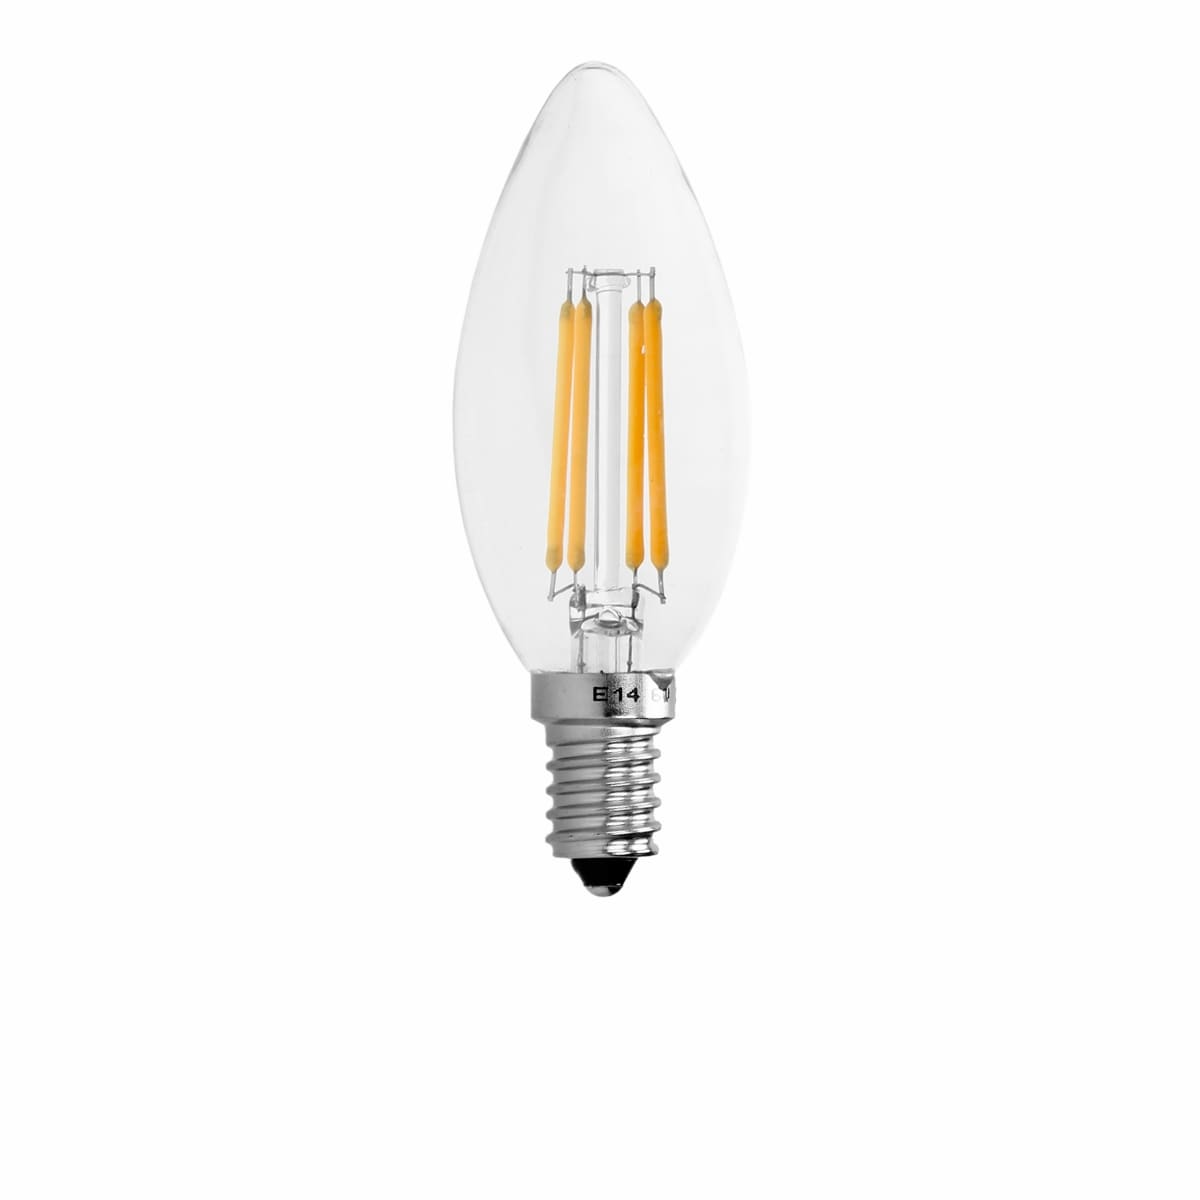 ECD Germany 4 x LED levande fila E14 4W 414 Lumen ° vinkel på AC 220-240V - LED-lampor och glödlampor - Elgiganten